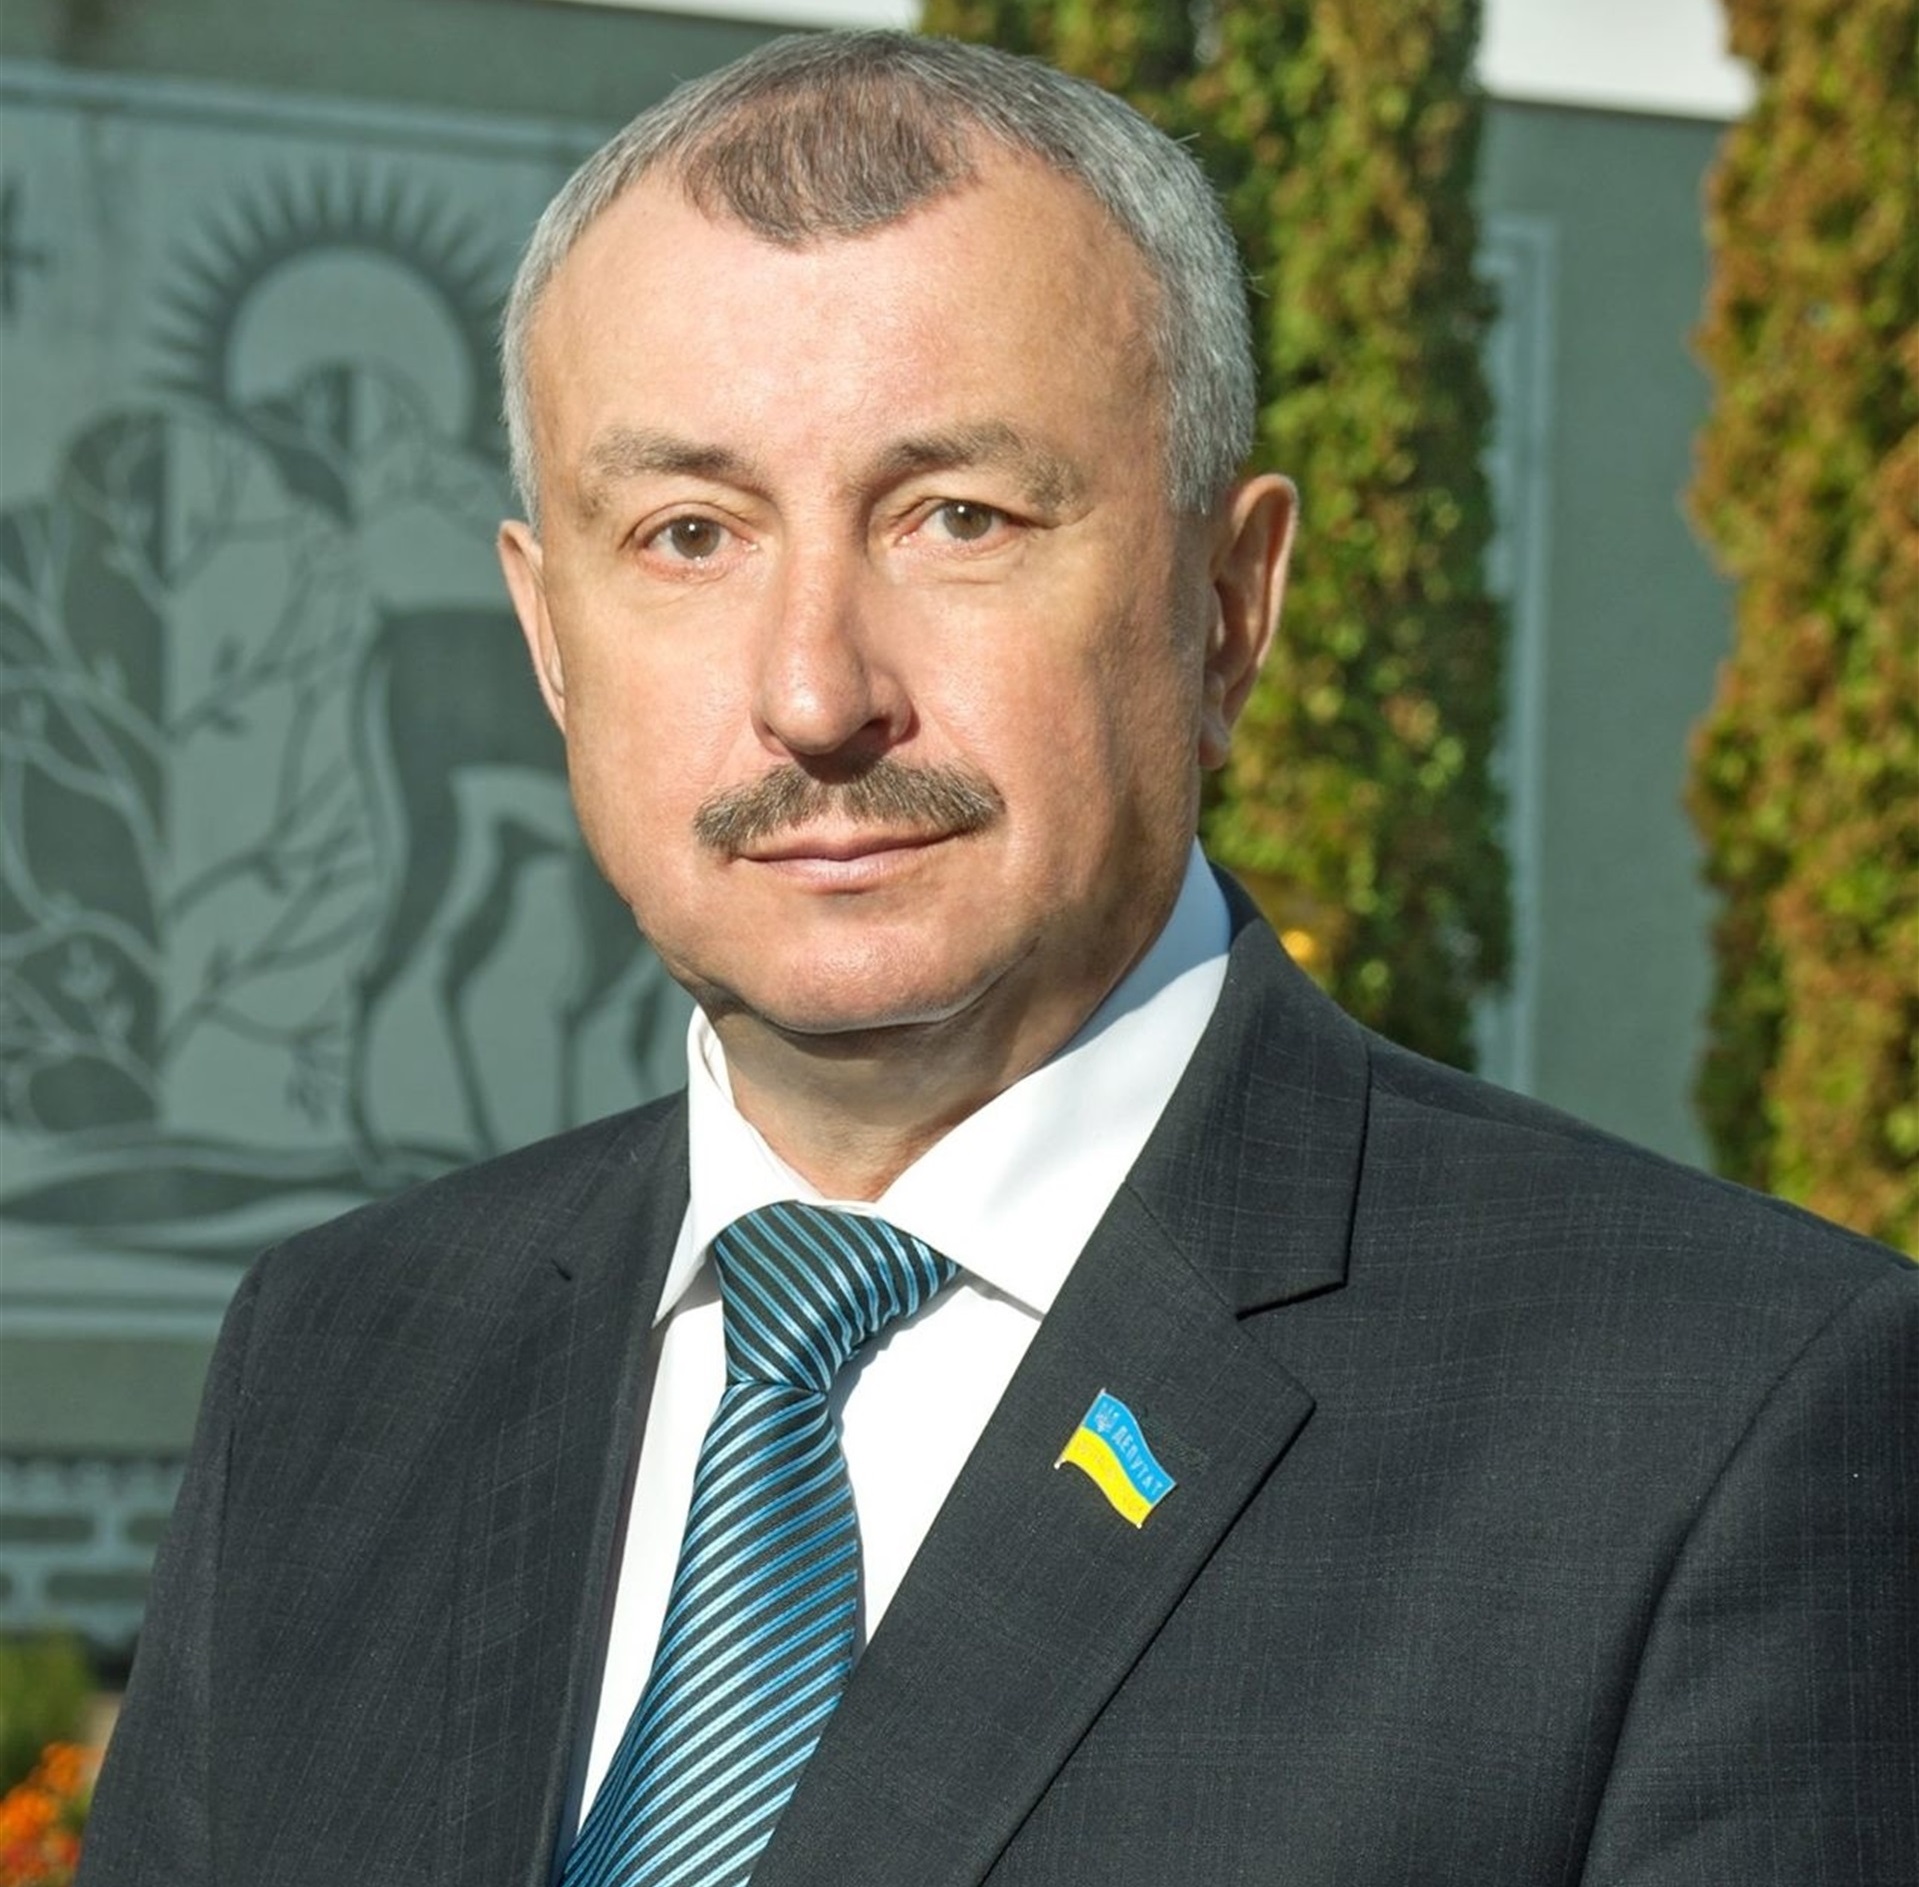 8 серпня свій день народження святкує депутат Житомирської обласної ради Нусбаум Степан Антонович